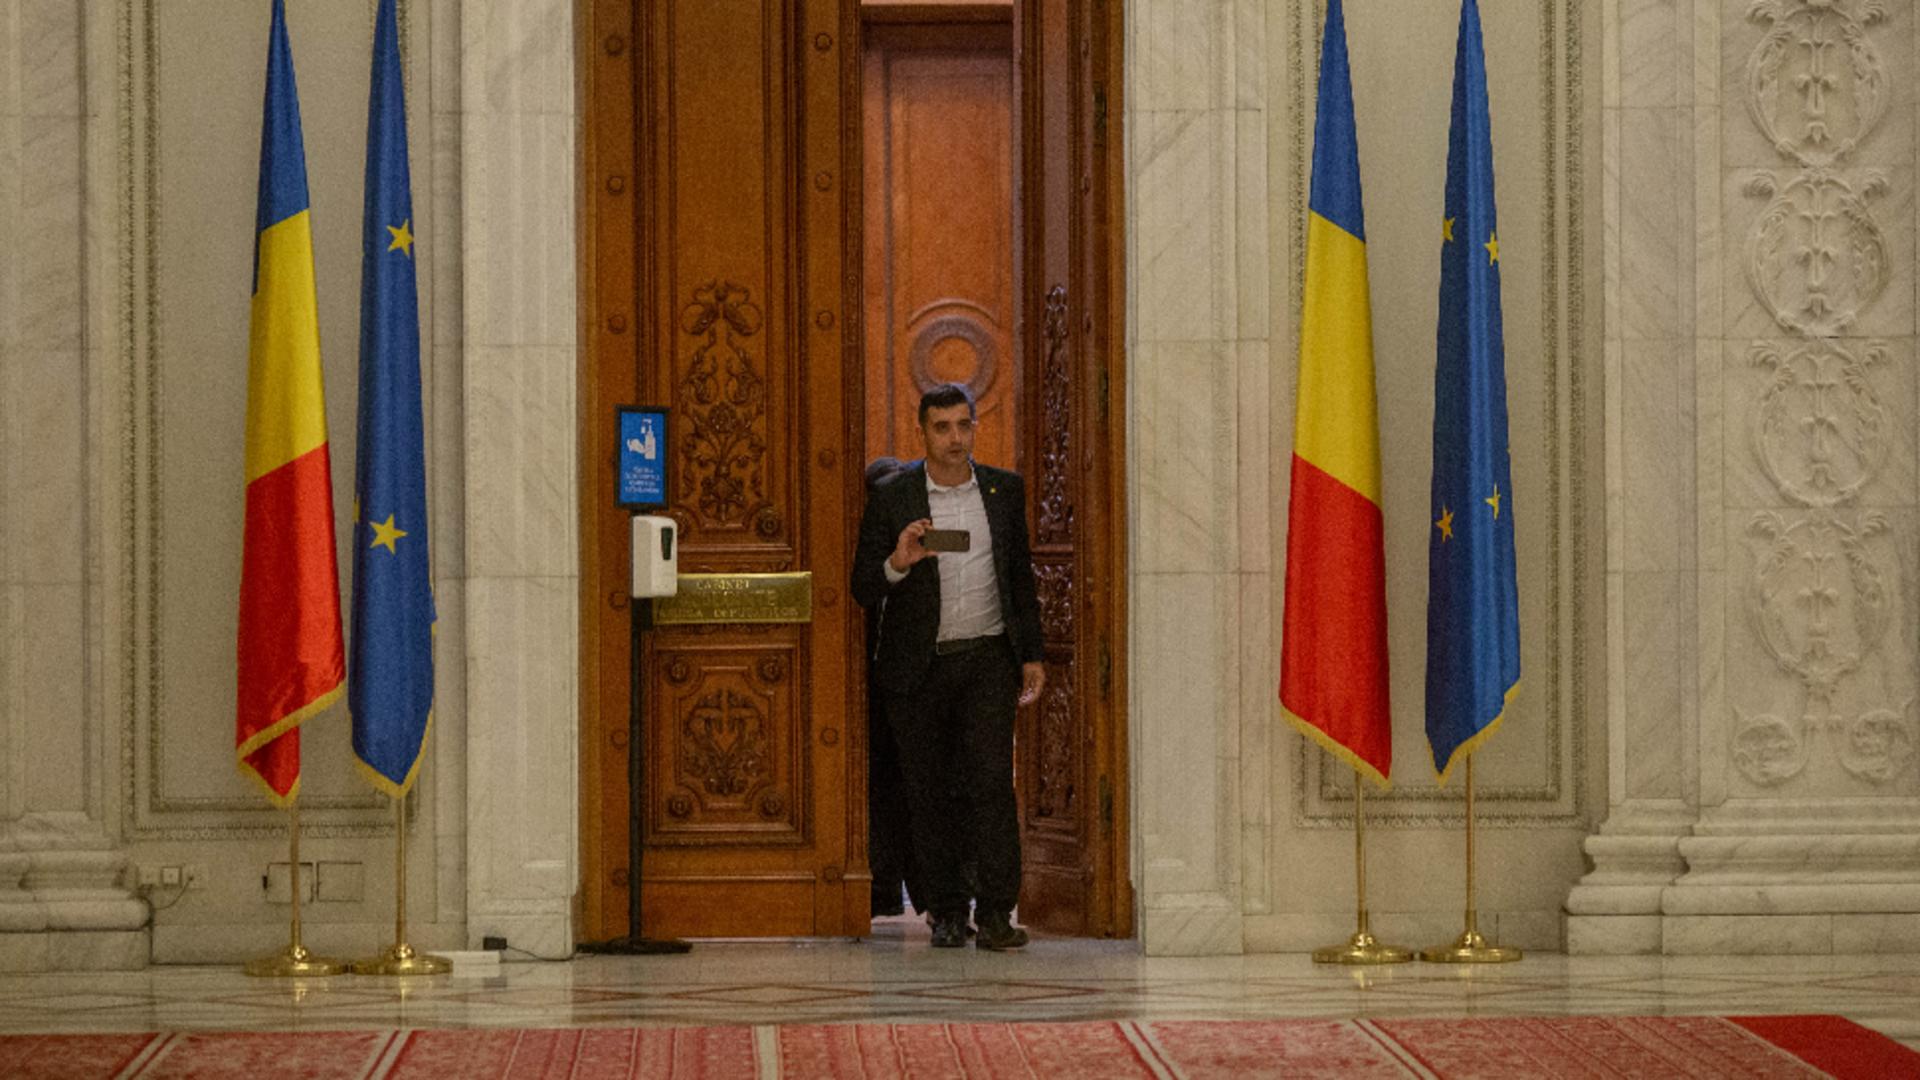 Sondaj INSCOP: AUR trece de 20% la intenția de vot și devine al doilea partid din România / Foto: Inquam Photos